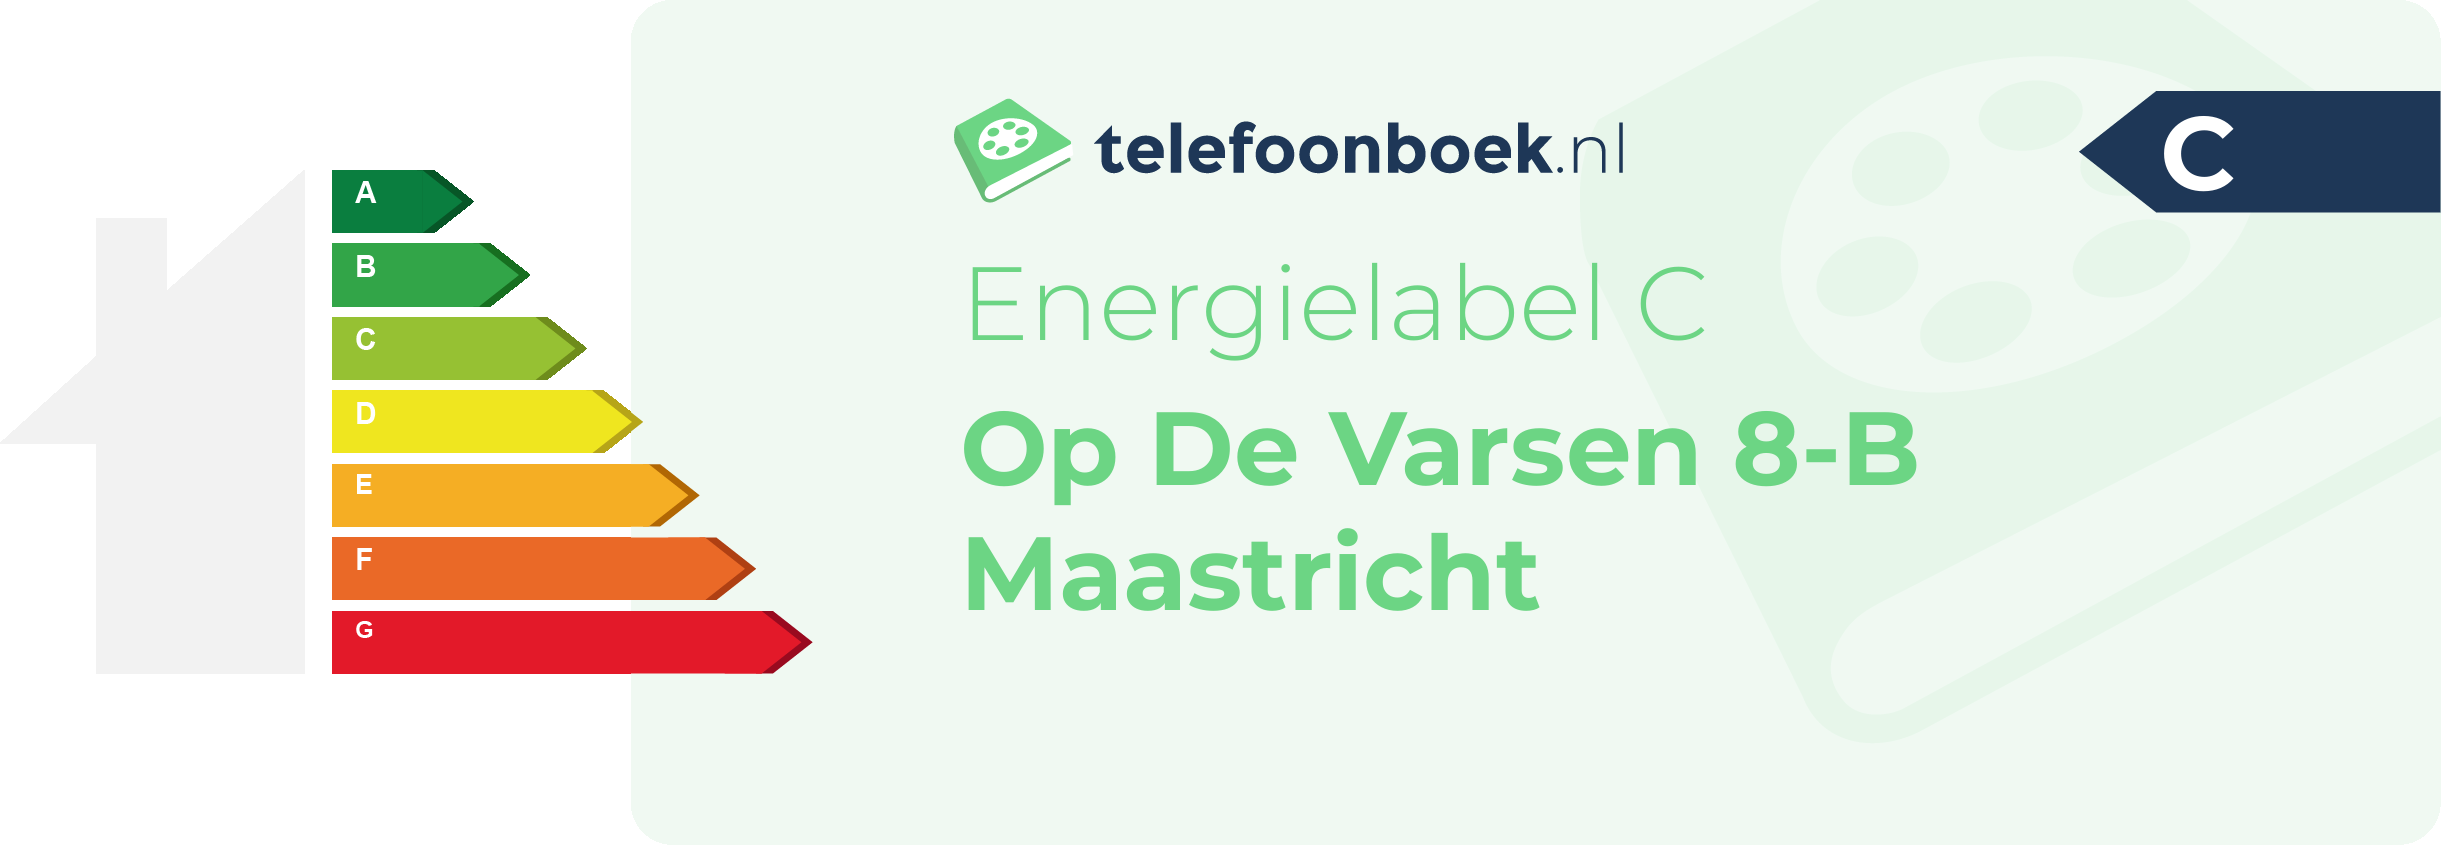 Energielabel Op De Varsen 8-B Maastricht